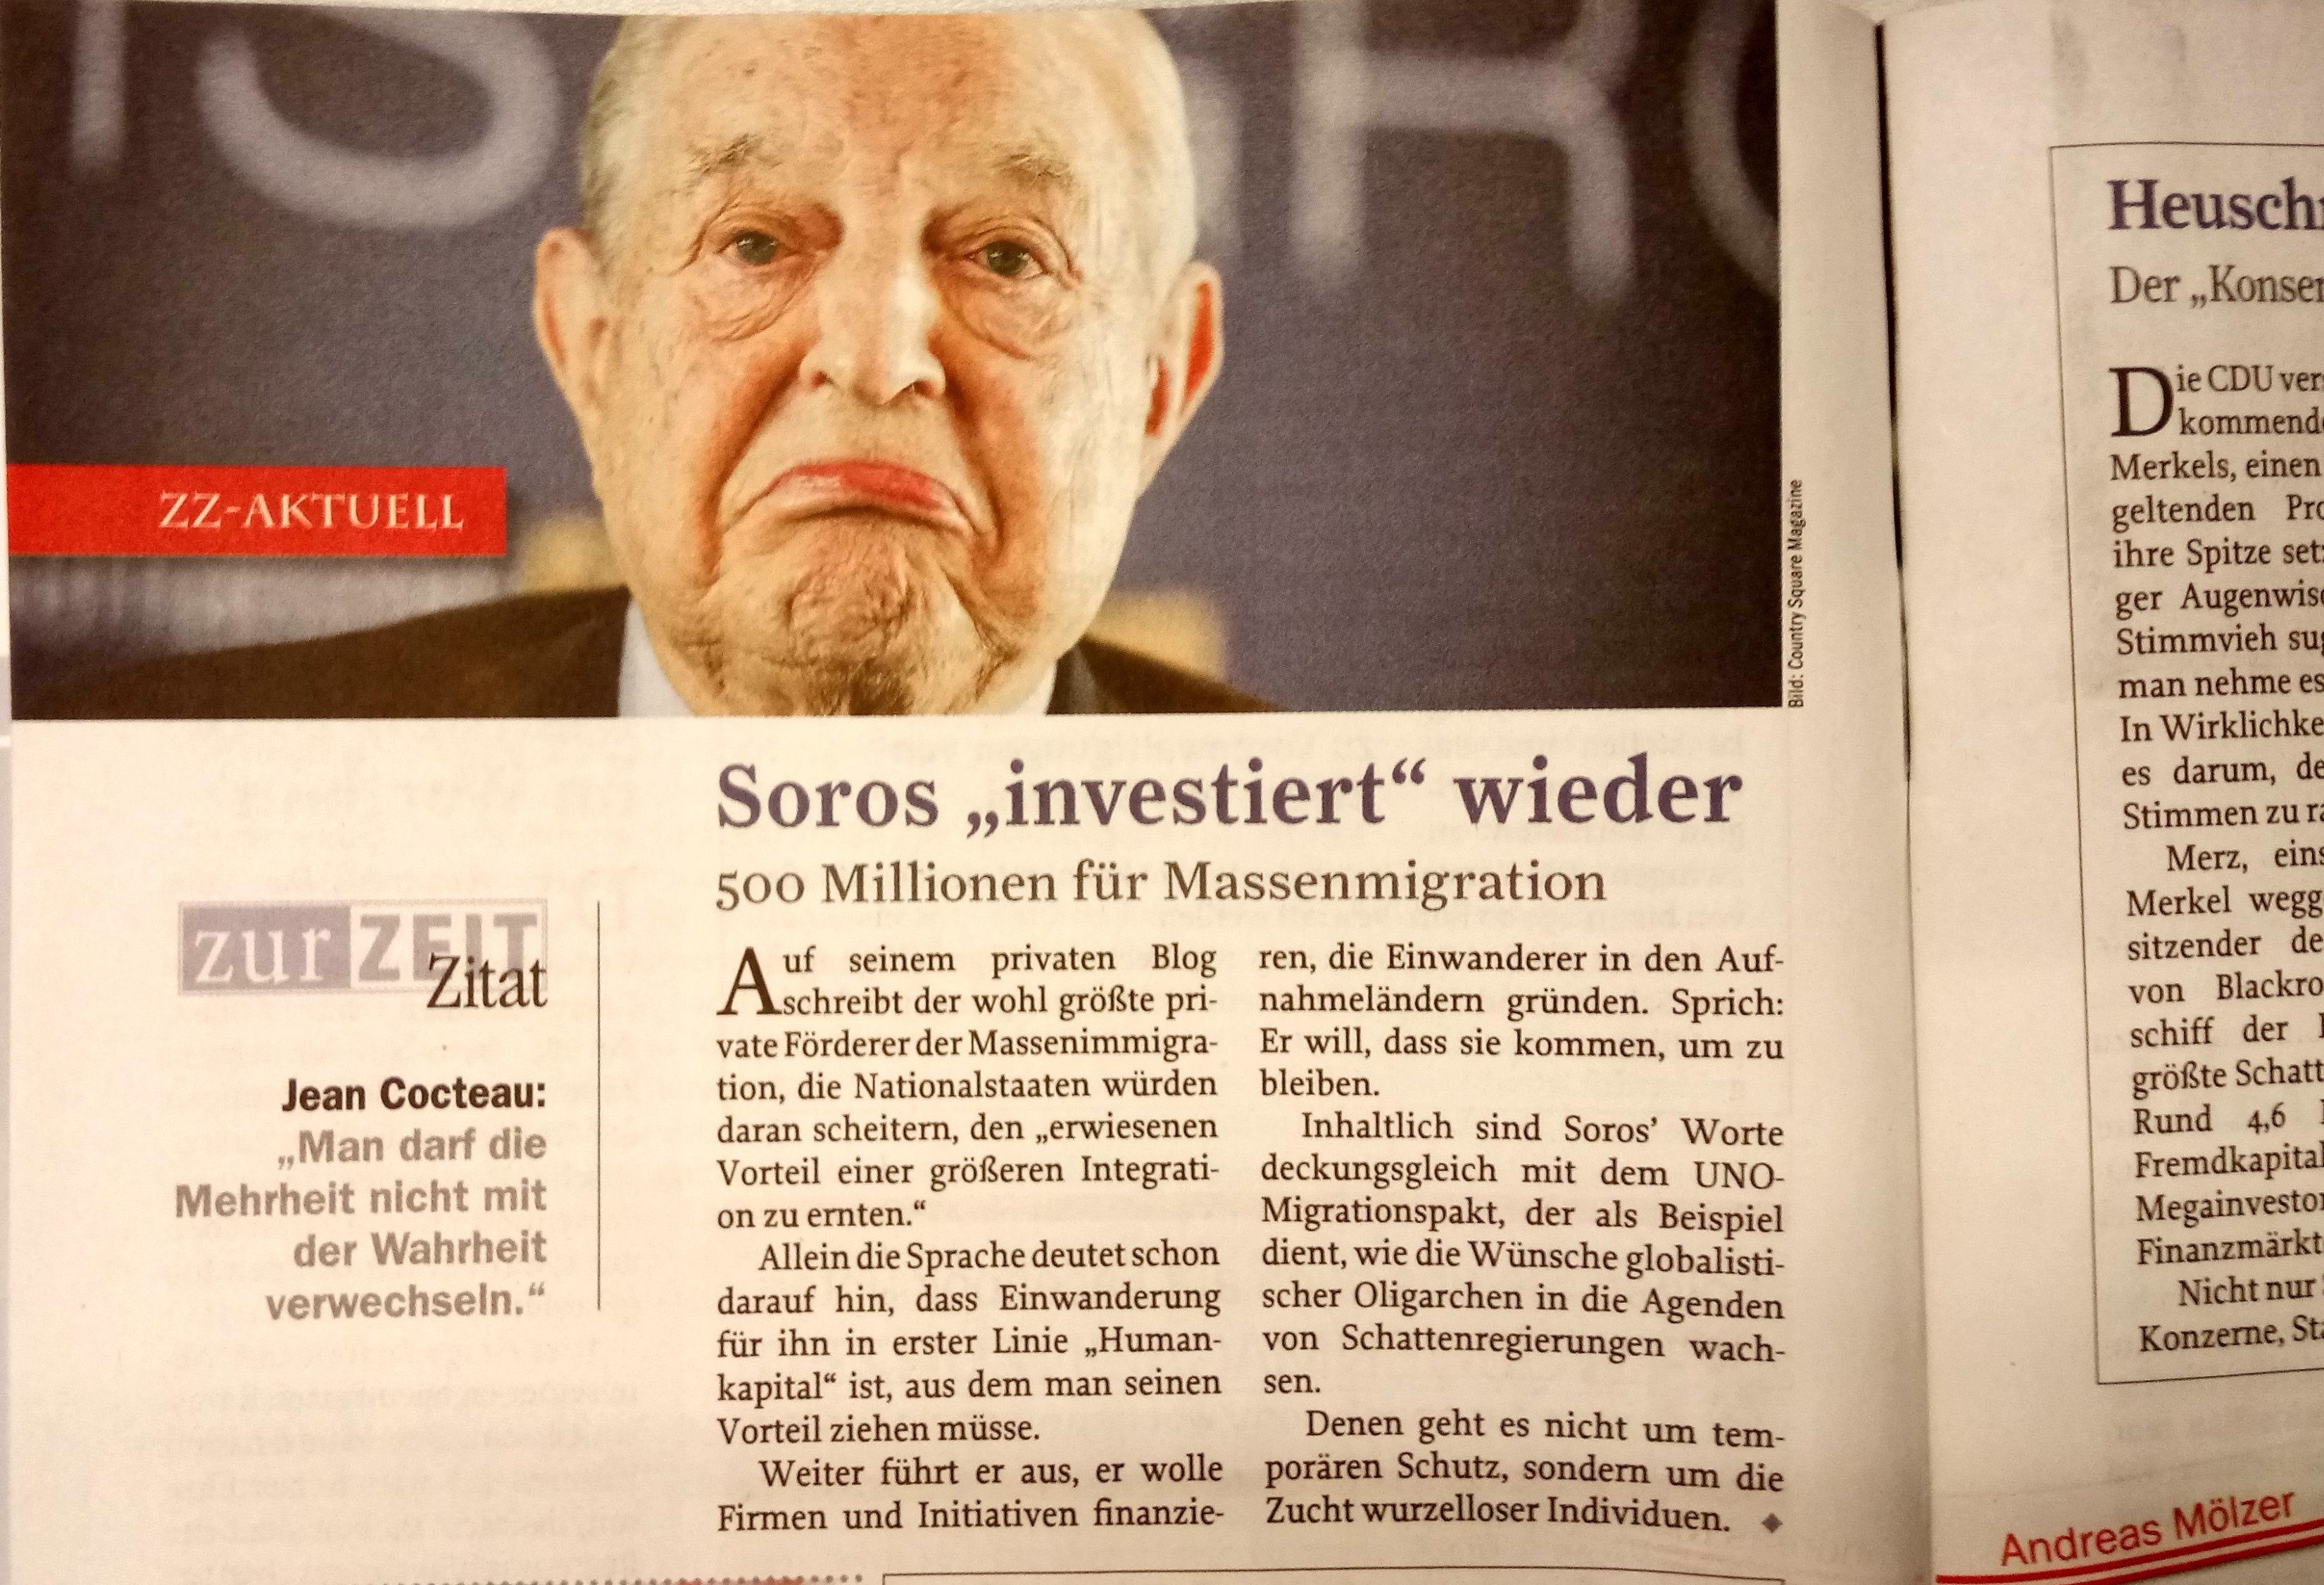 Anti-Soros-Propaganda in „Zur Zeit“ Ausgabe 45/18: "Es geht um die Zucht wurzelloser Individuen"